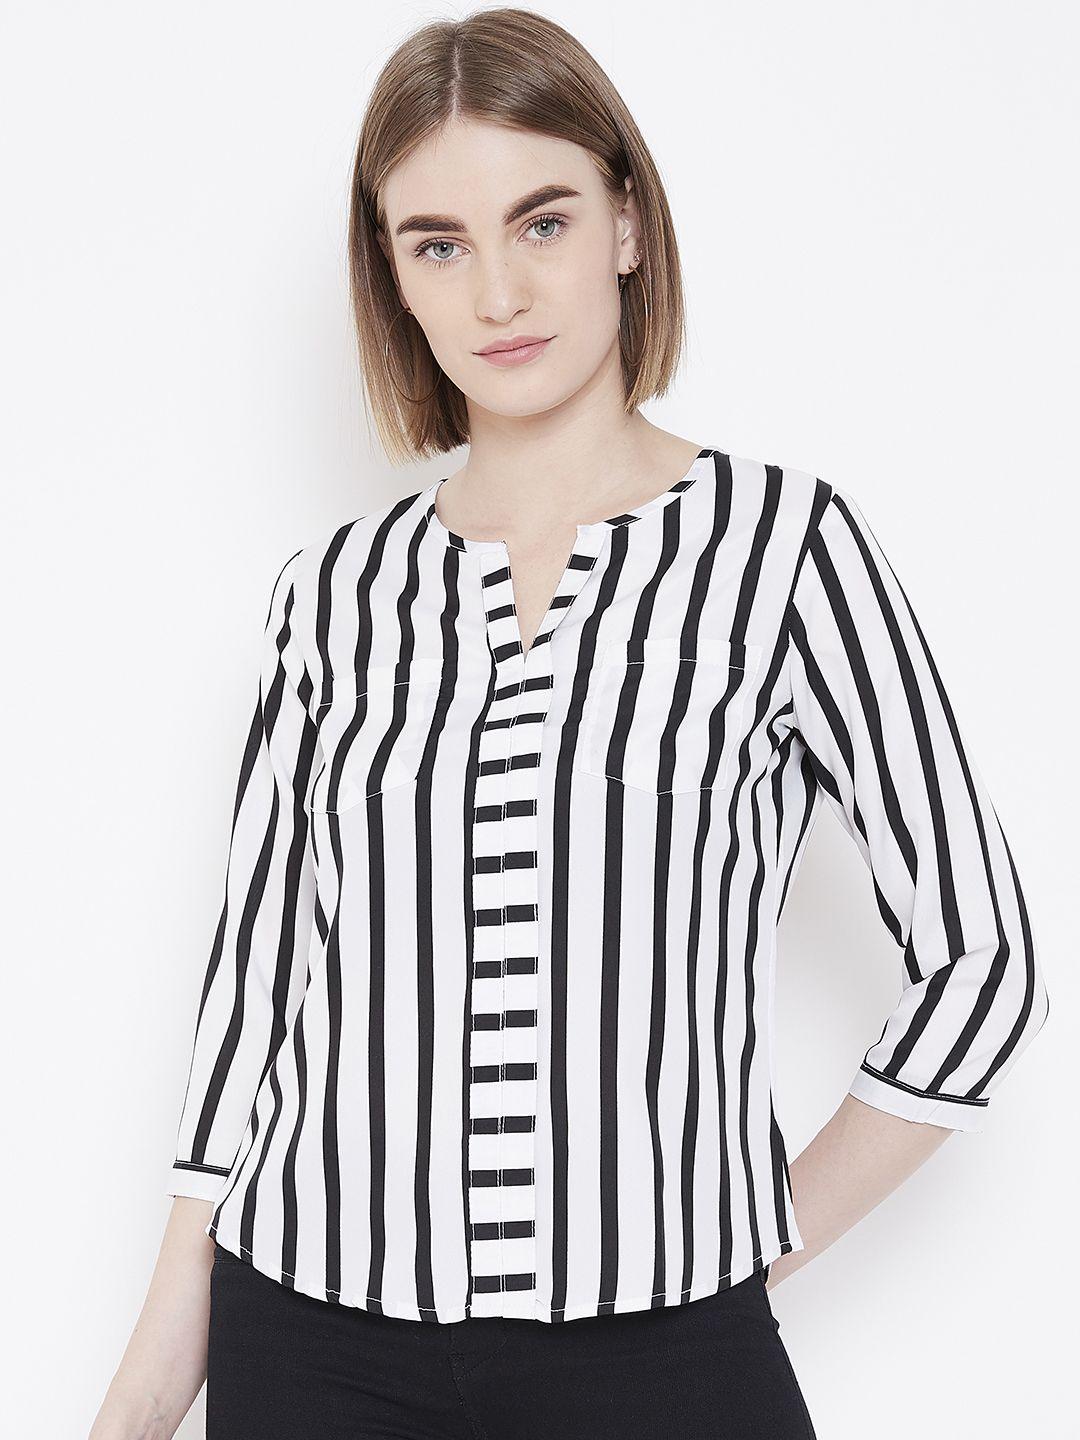 deewa women white & black striped top